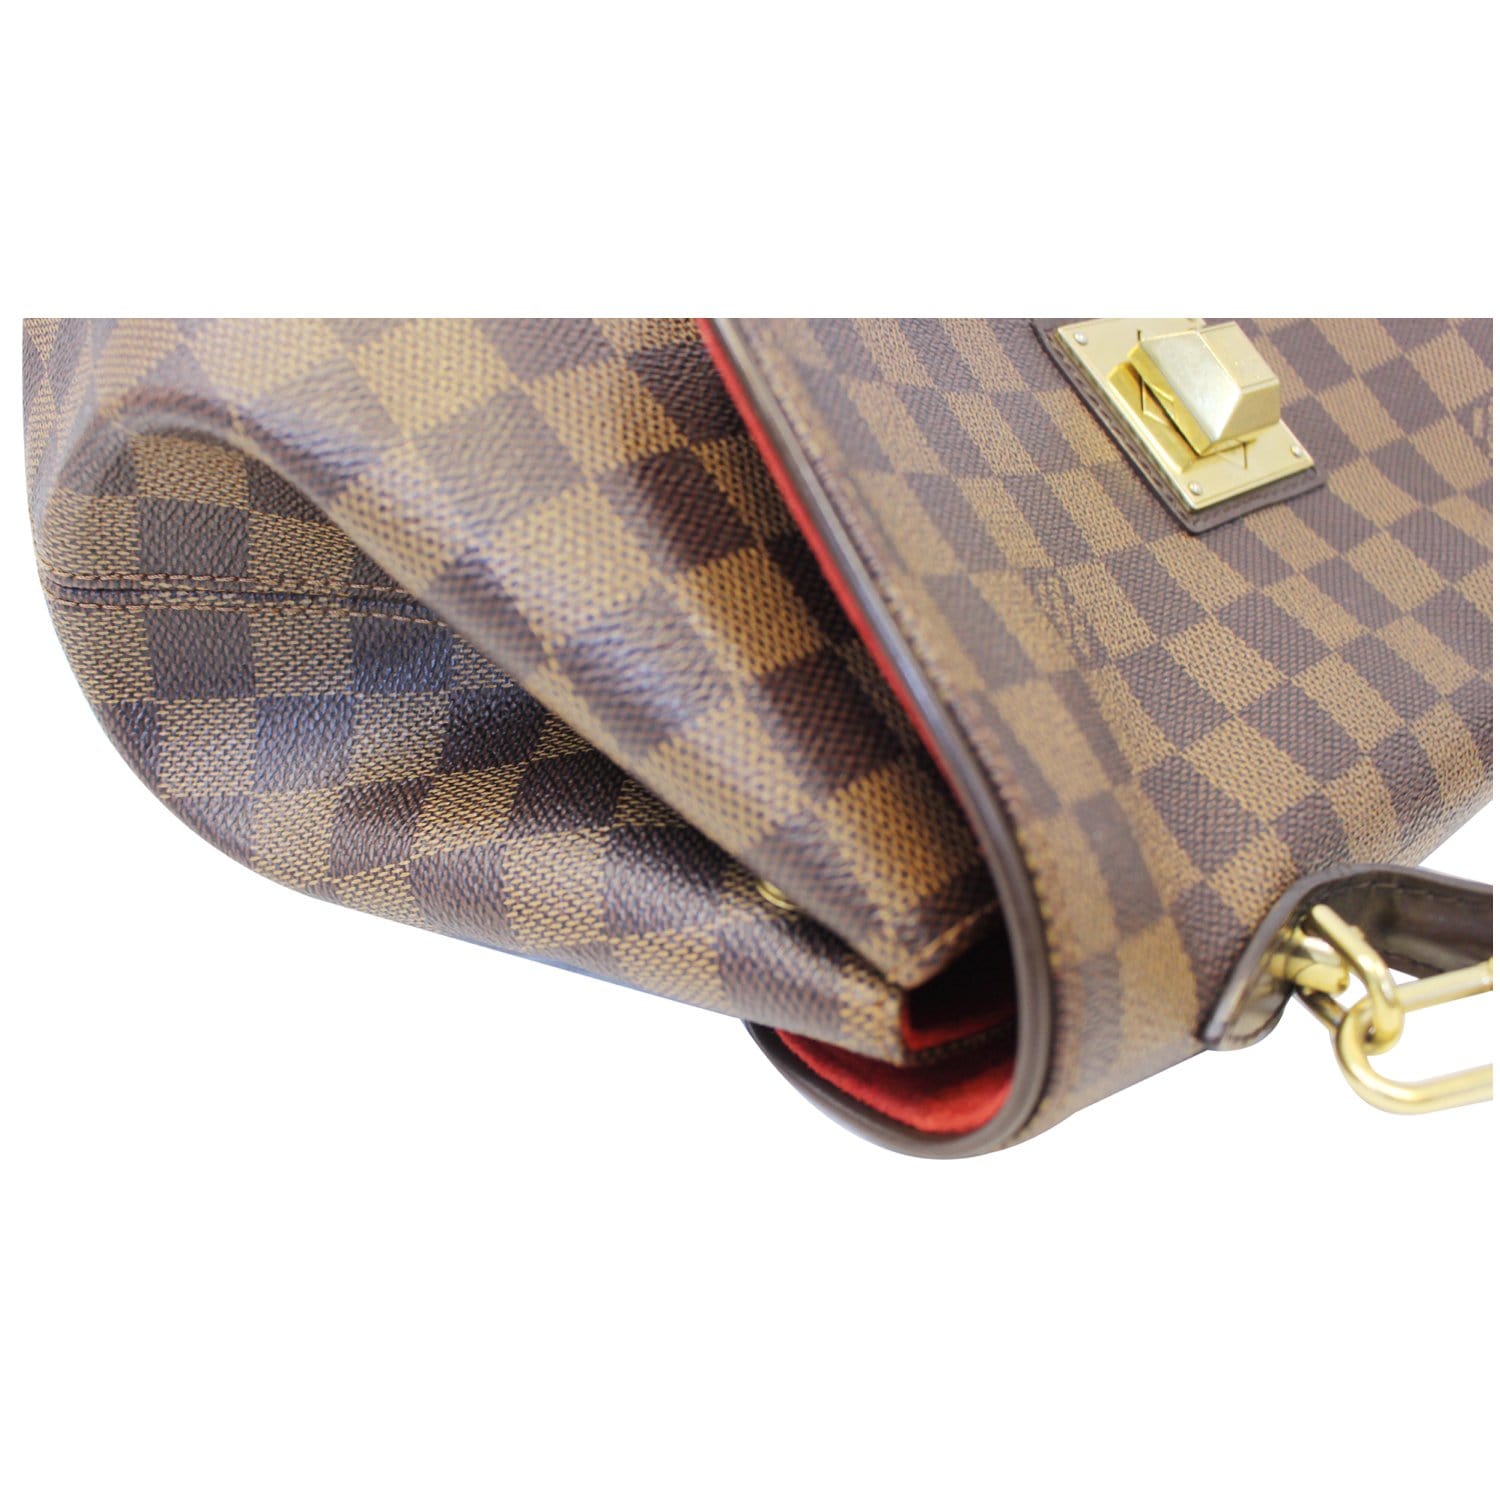 100% Authentic Louis Vuitton Bergamo MM Damier bag - Depop